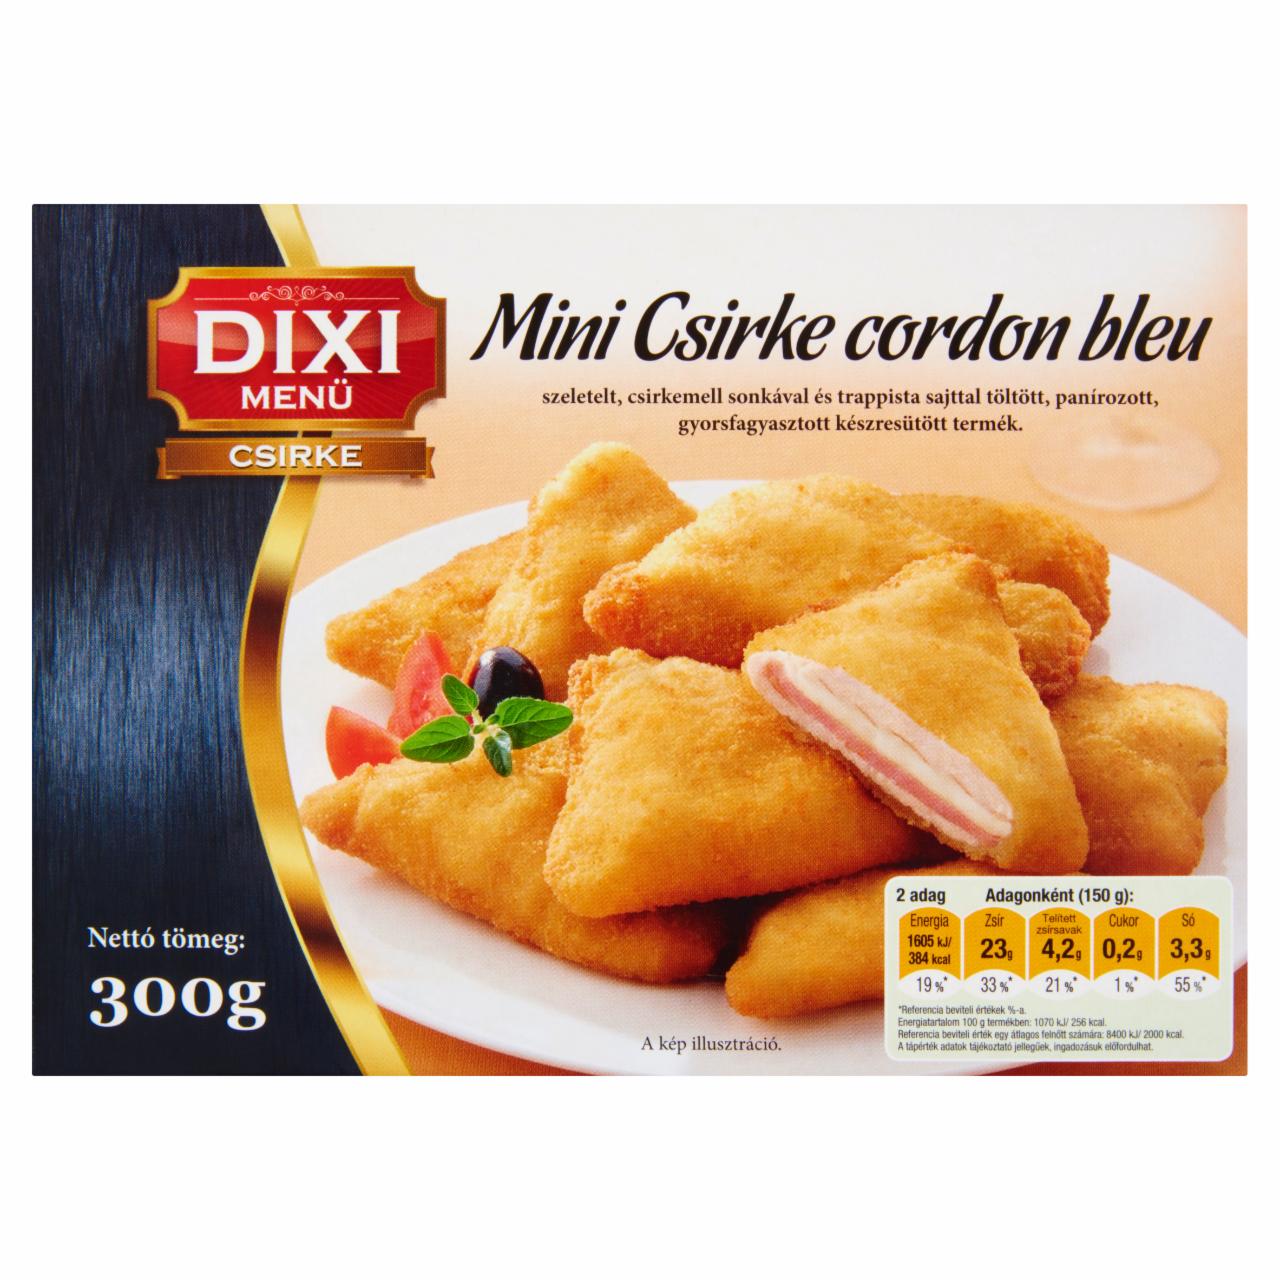 Képek - Dixi Menü Csirke gyorsfagyasztott mini csirke cordon bleu 300 g